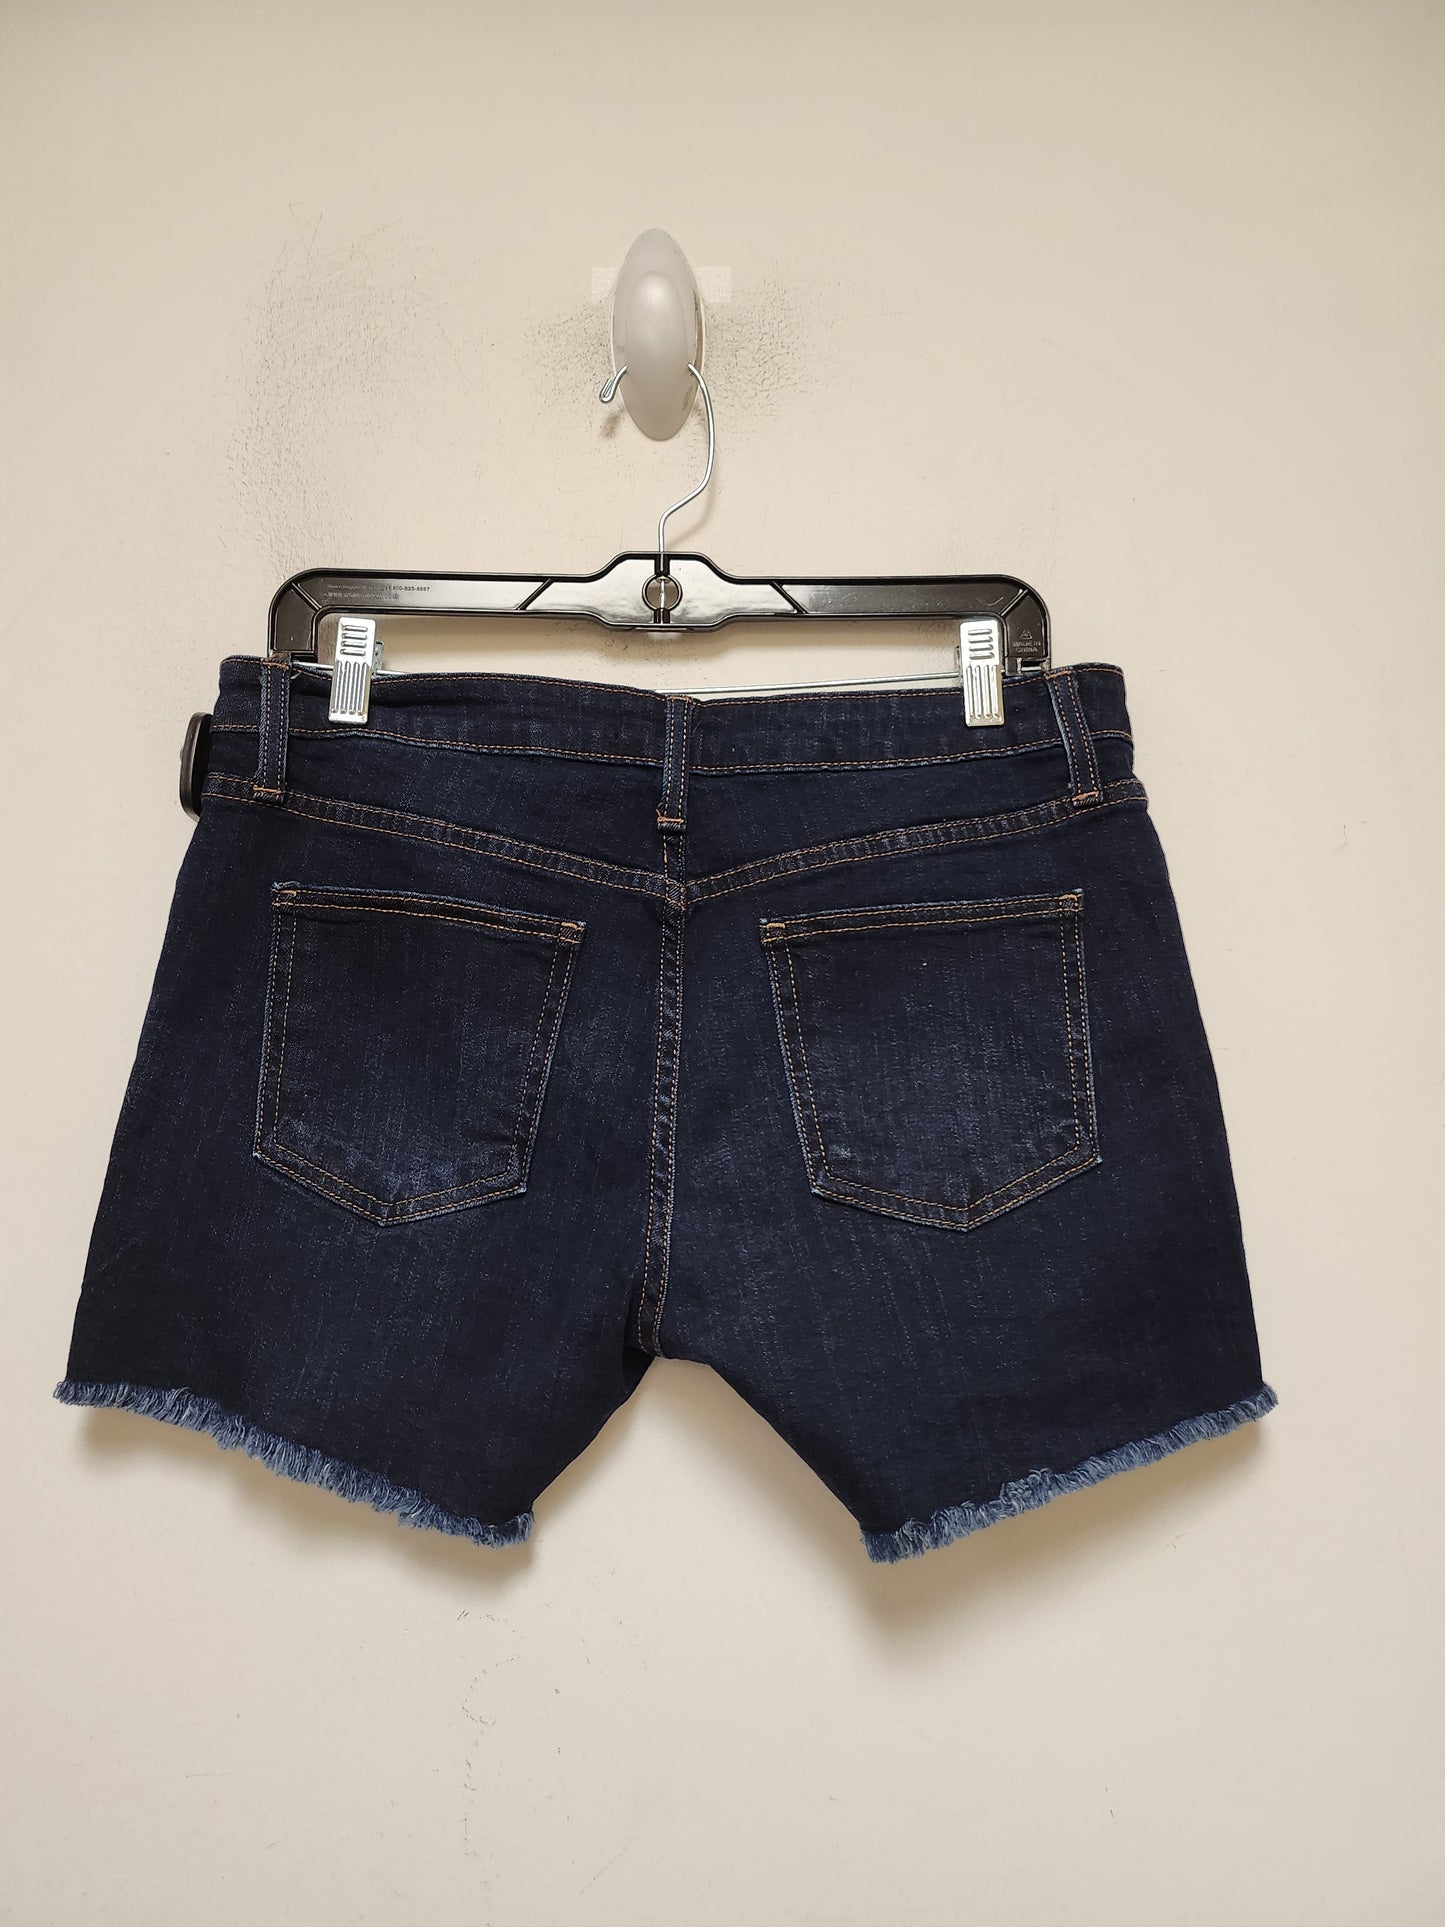 Blue Denim Shorts Clothes Mentor, Size 8